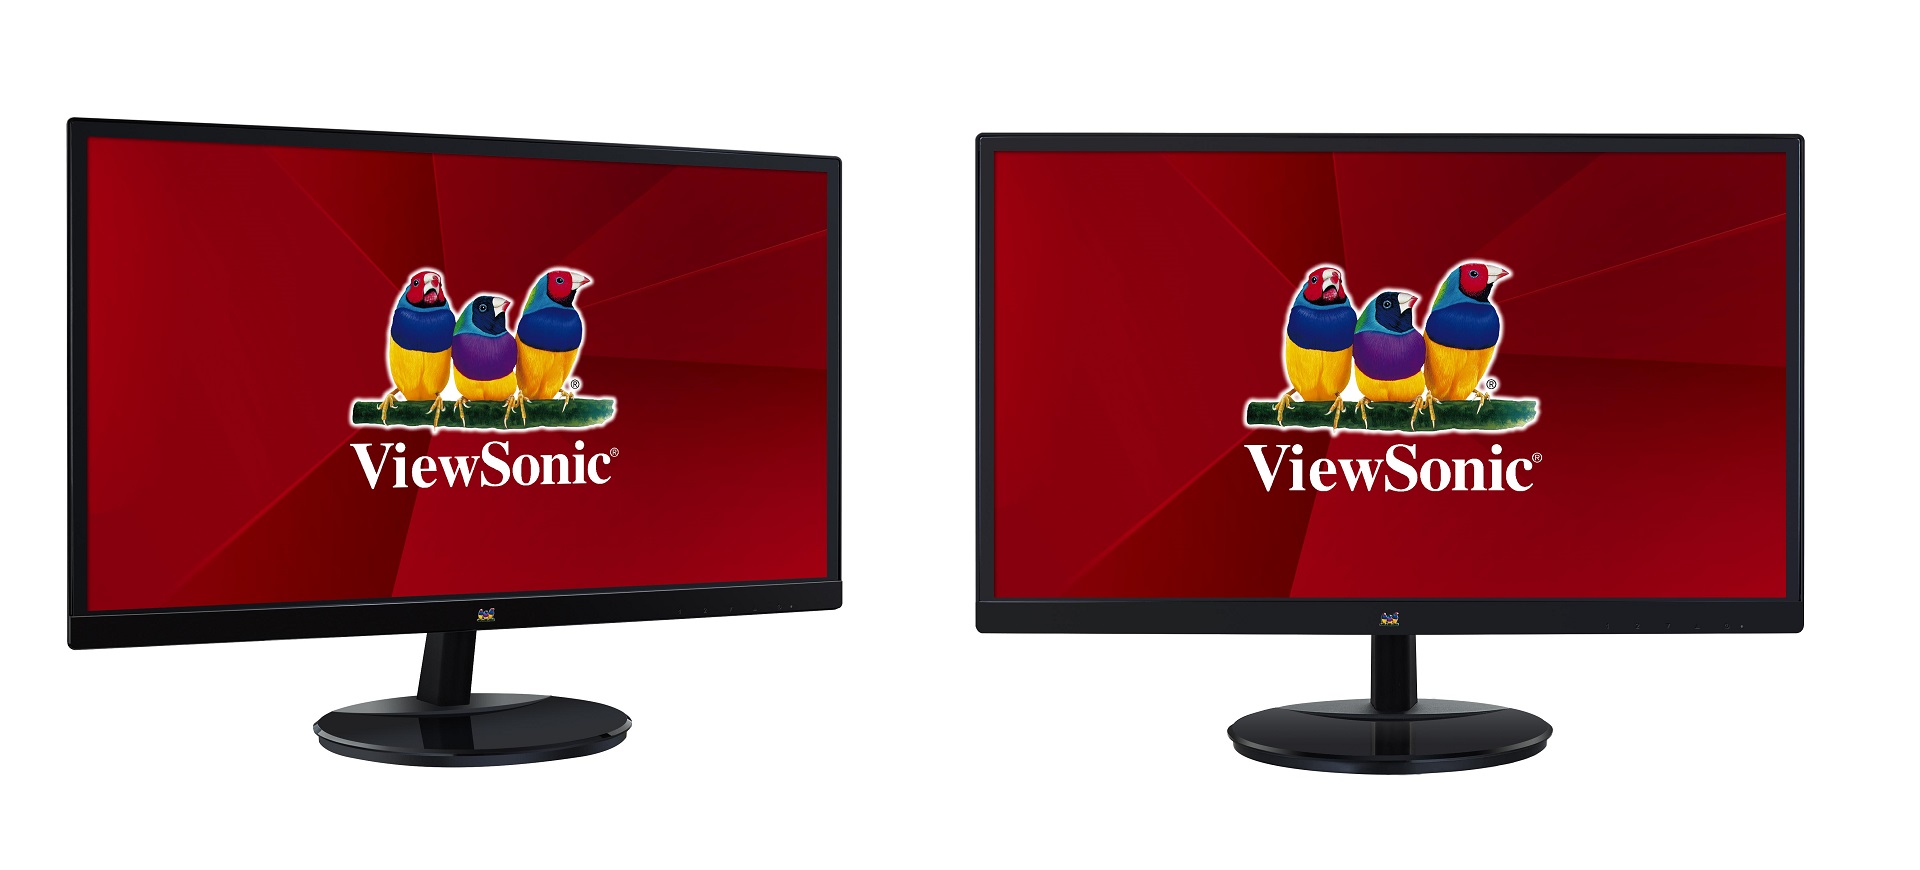 ViewSonic VA59 Series mang đến màn hình siêu rộng có tính năng chăm sóc mắt